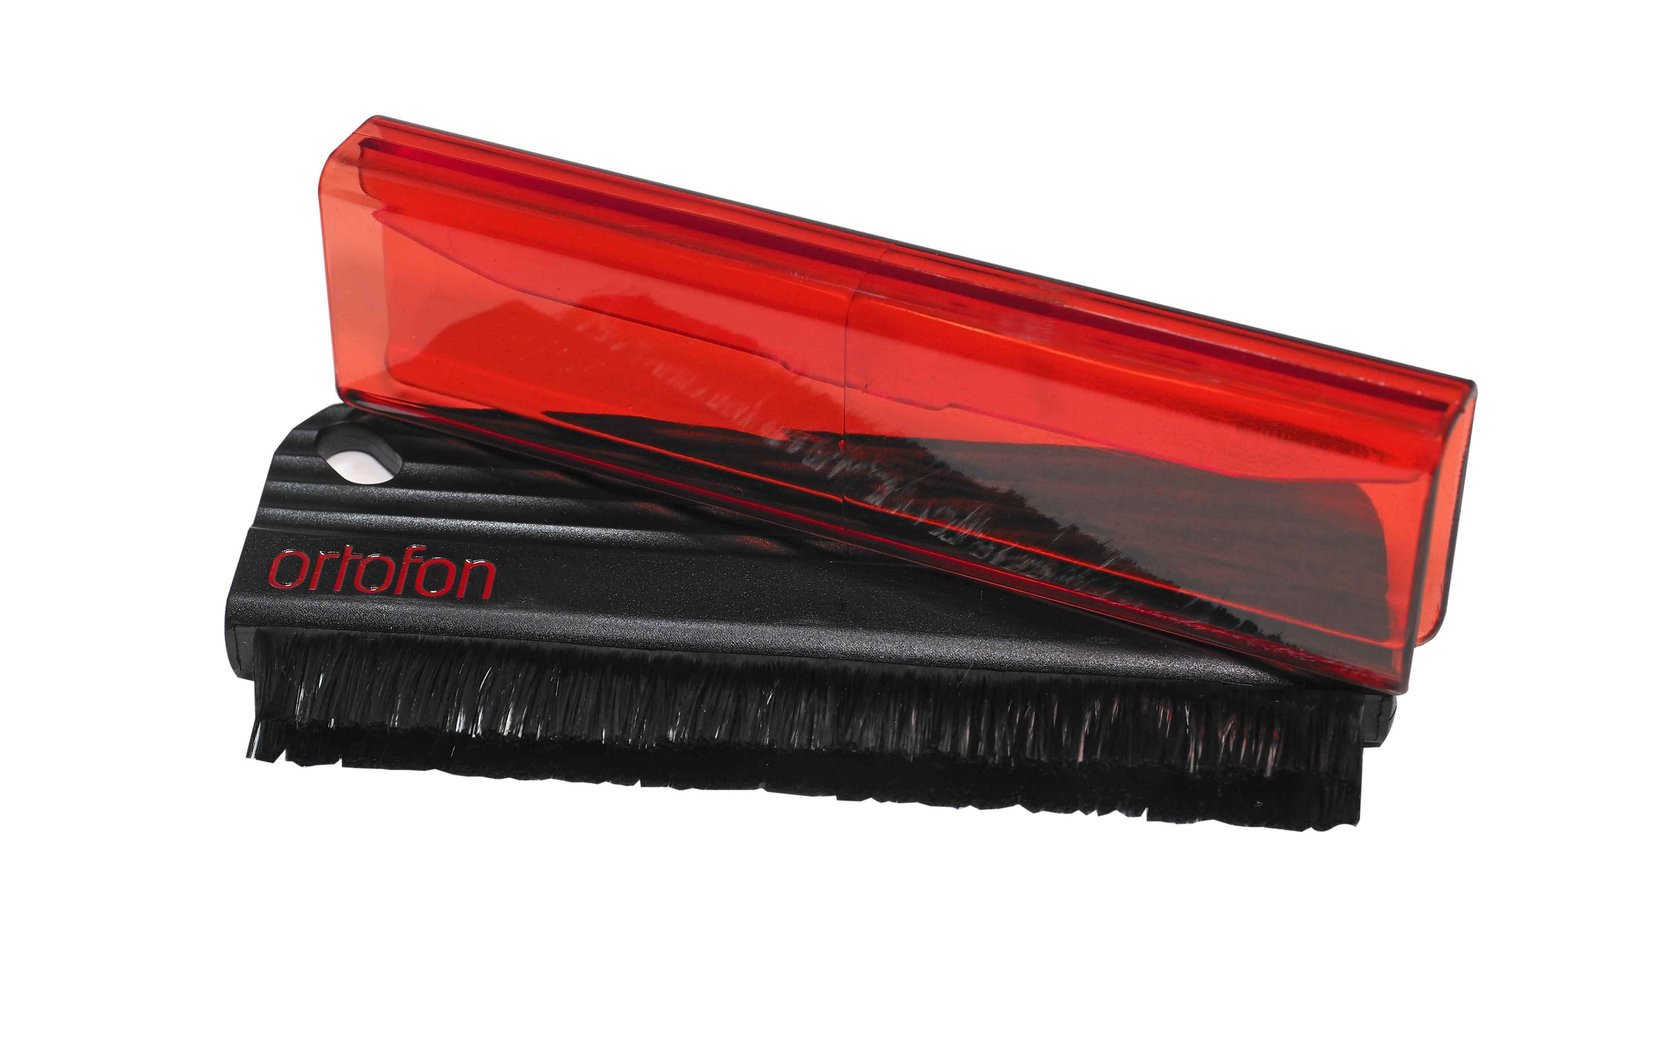 Ortofon Record Brush carbon fiber brush